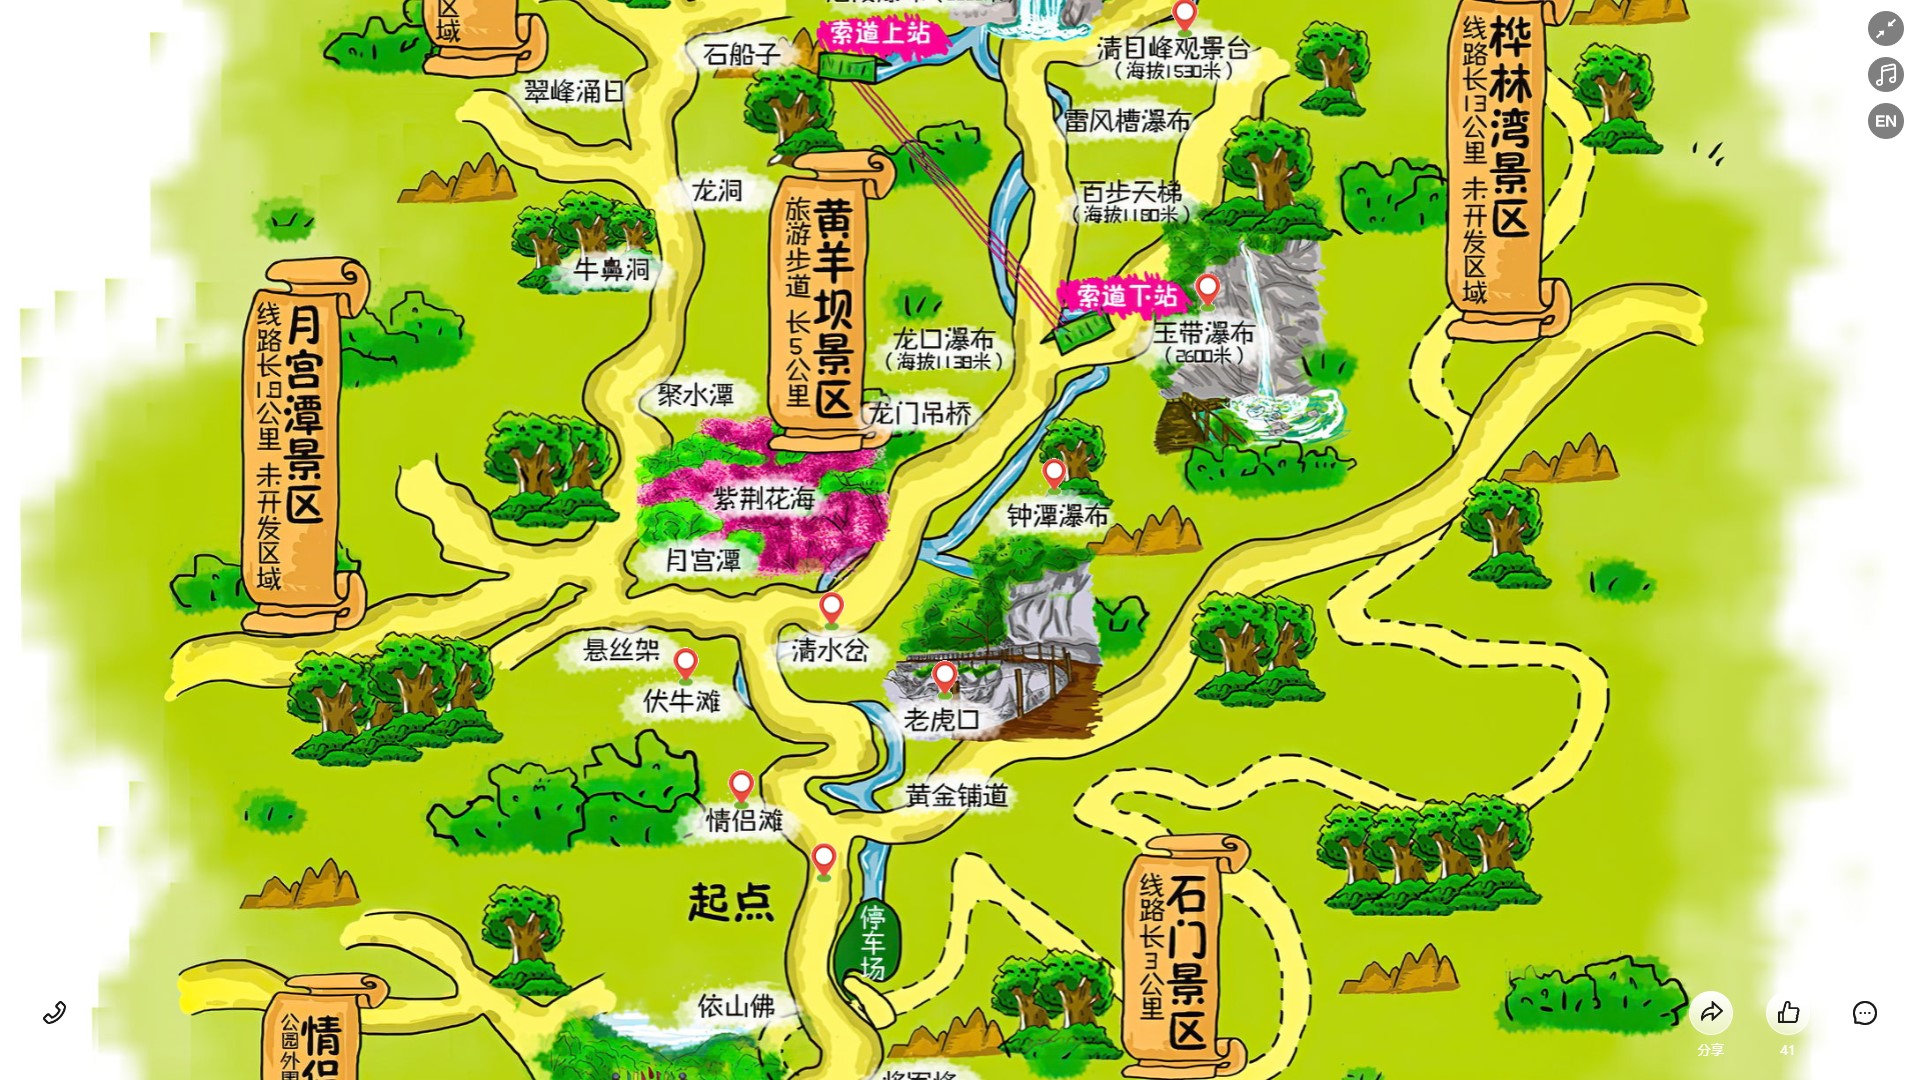 井冈山景区导览系统